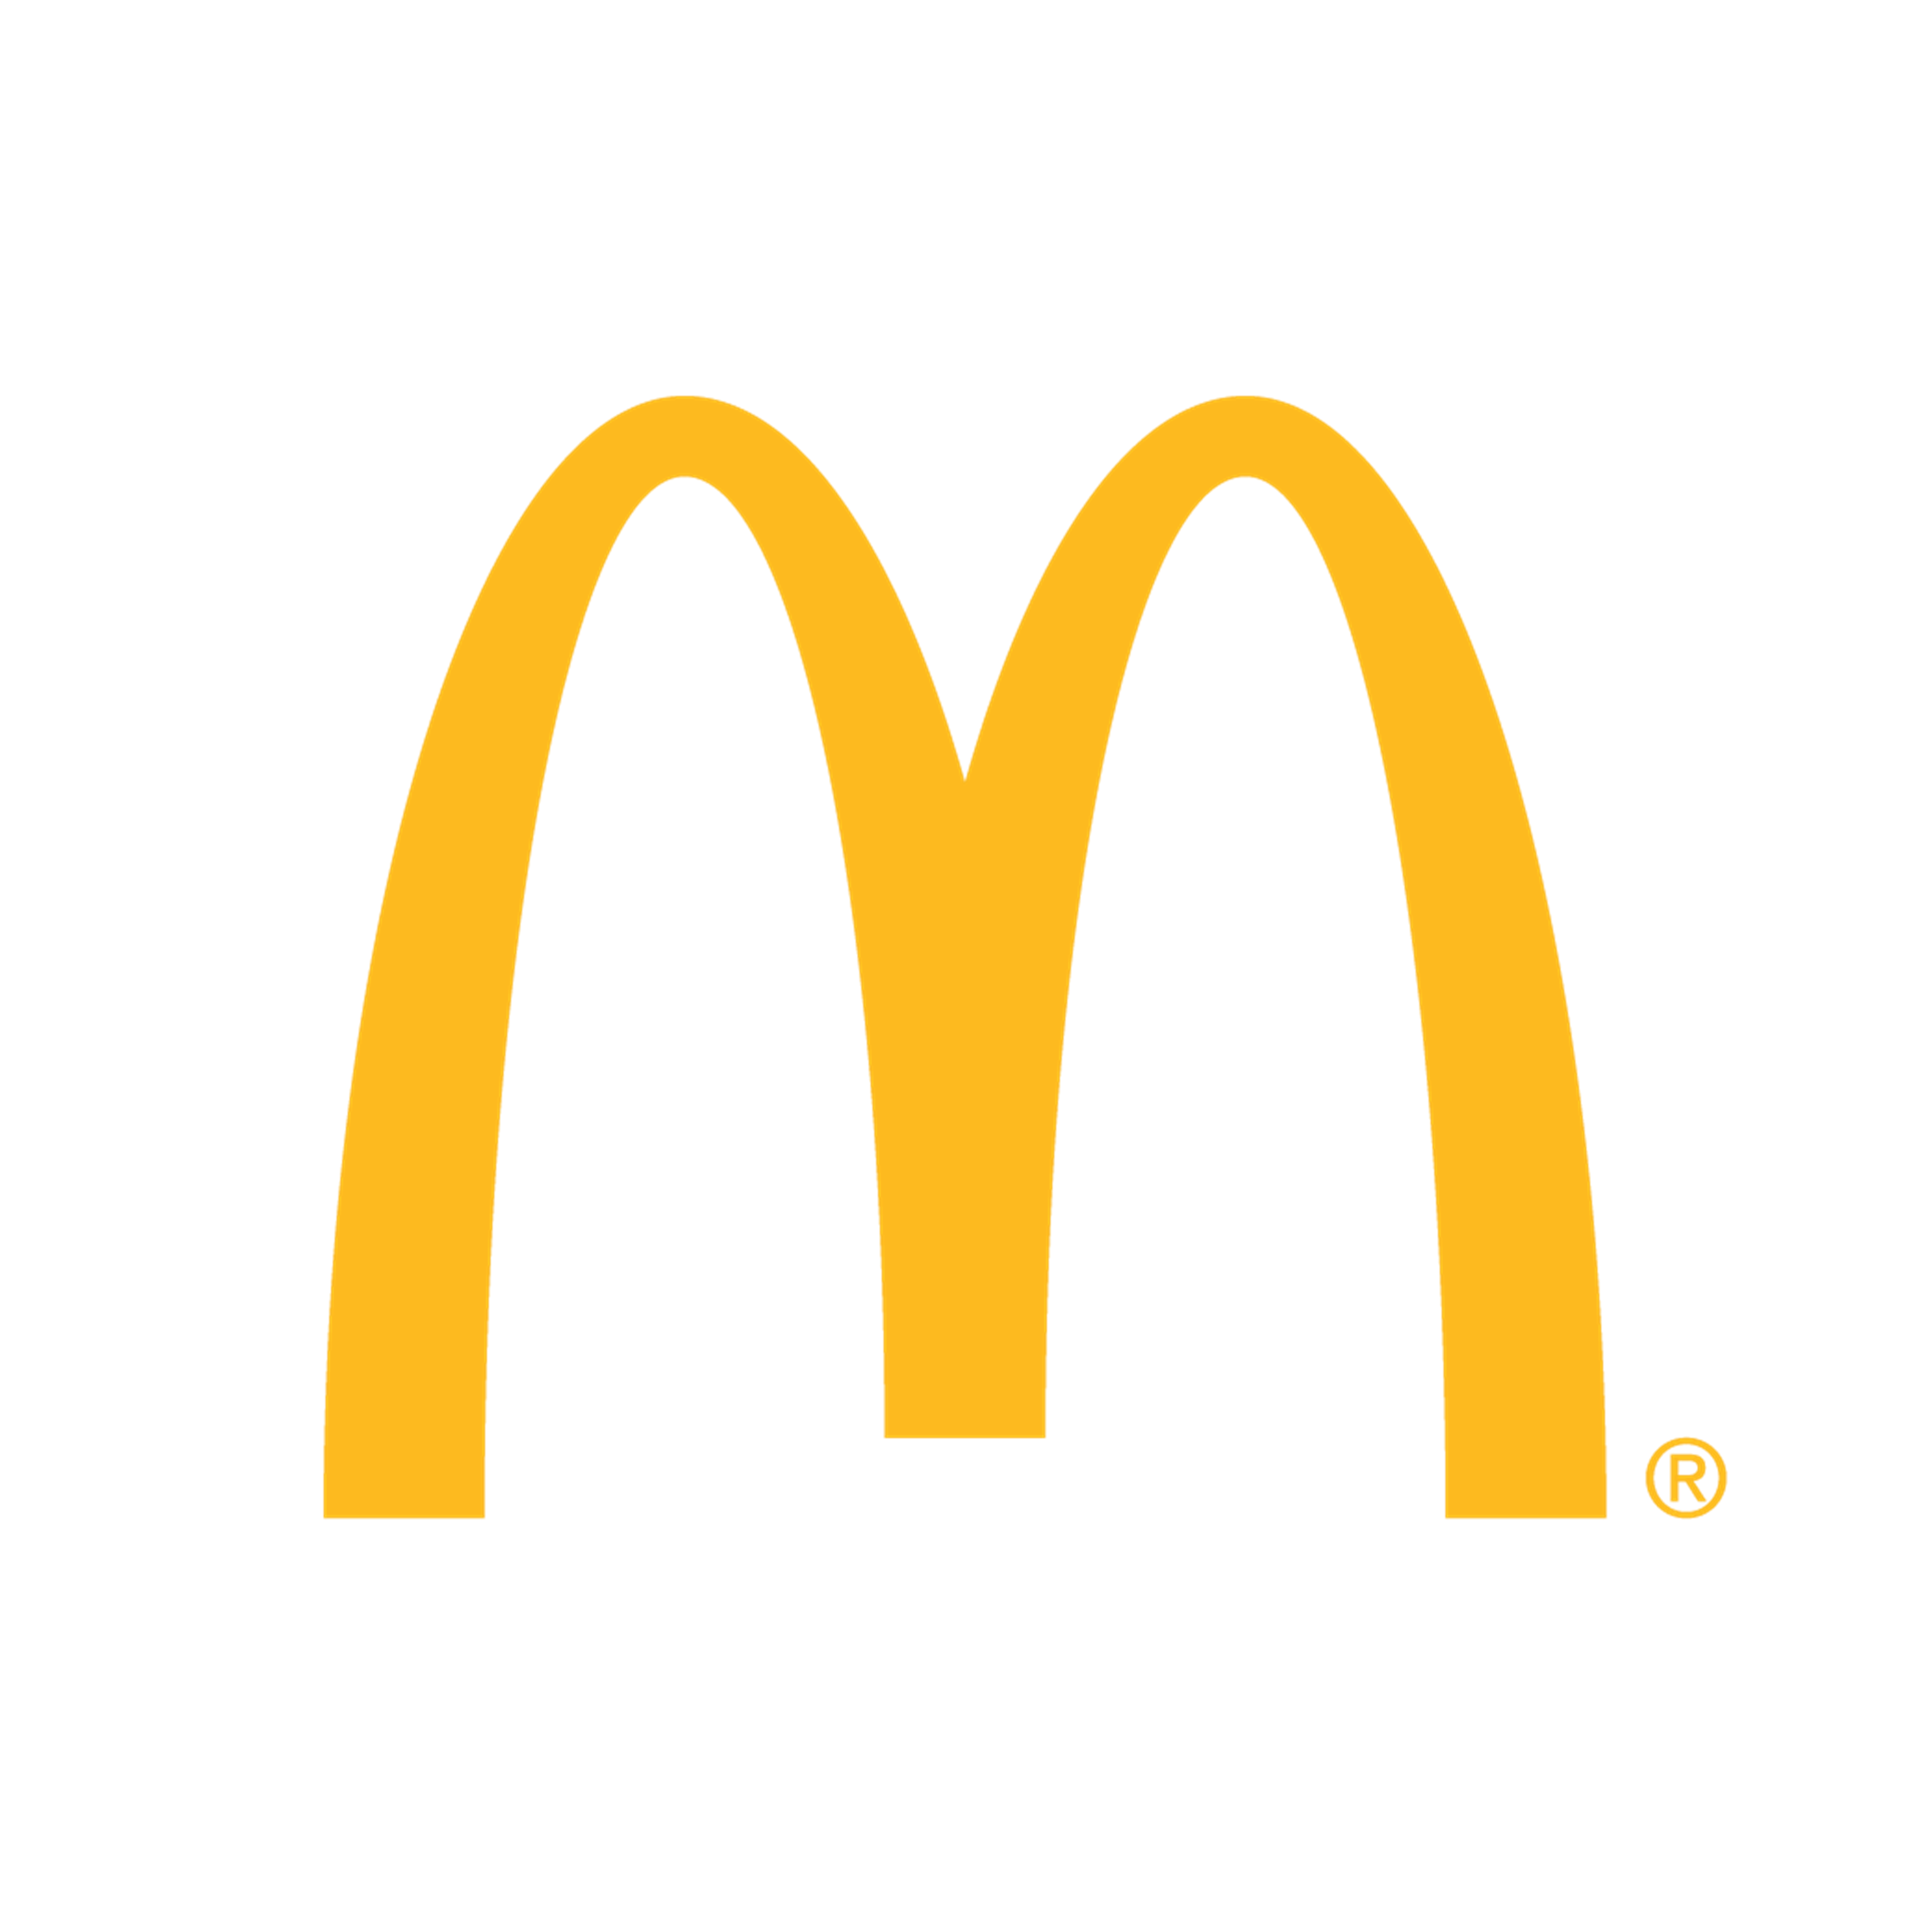 Công ty cổ phần Good Day Hospitality - McDonald's Vietnam